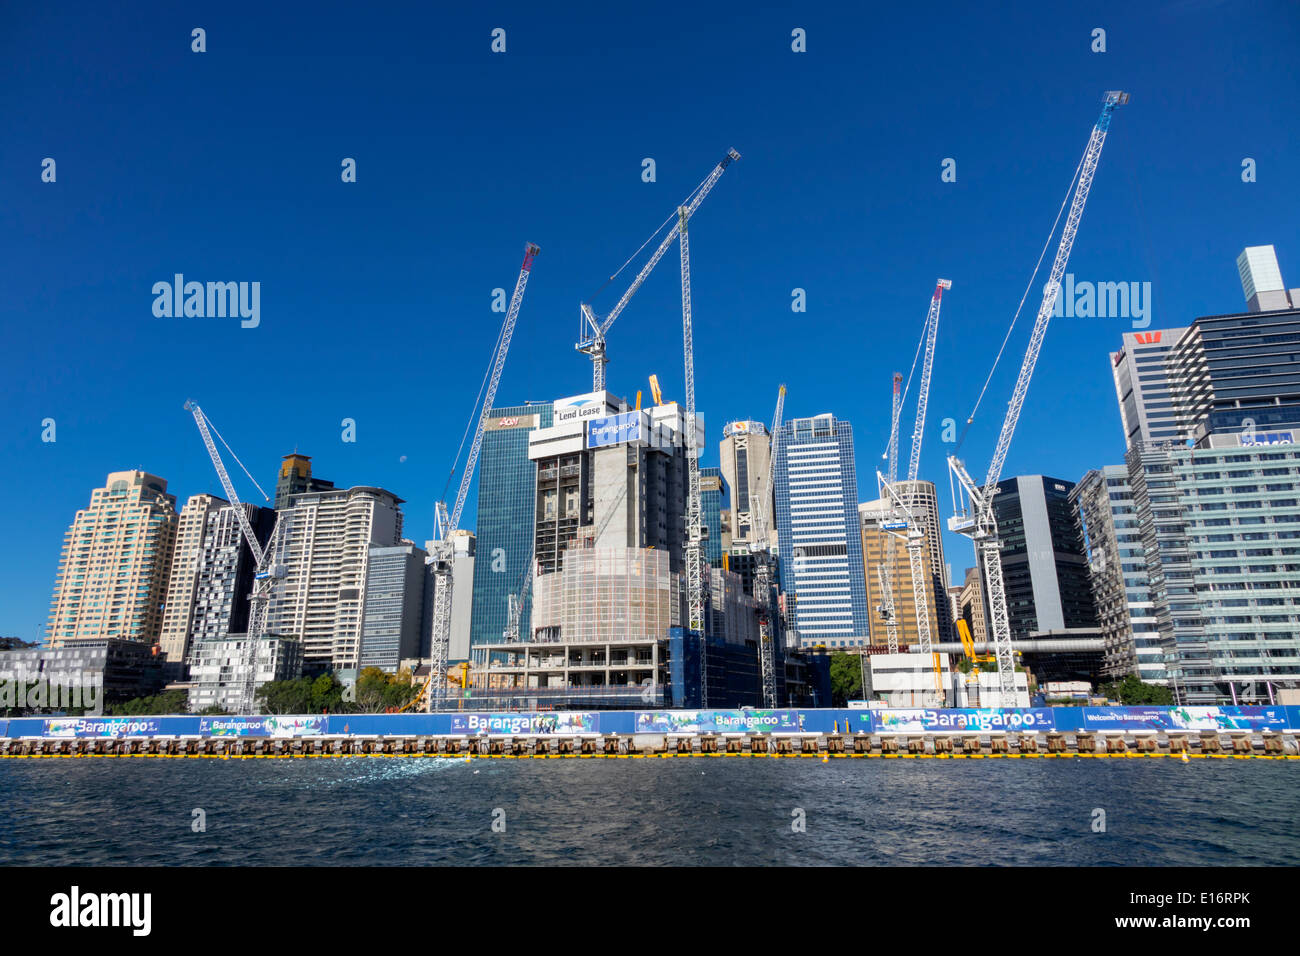 Sydney Australie,Darling Harbour,port,Barangaroo,nouveau,en,construction,site,grues,gratte-ciel,horizon de la ville,AU140311112 Banque D'Images